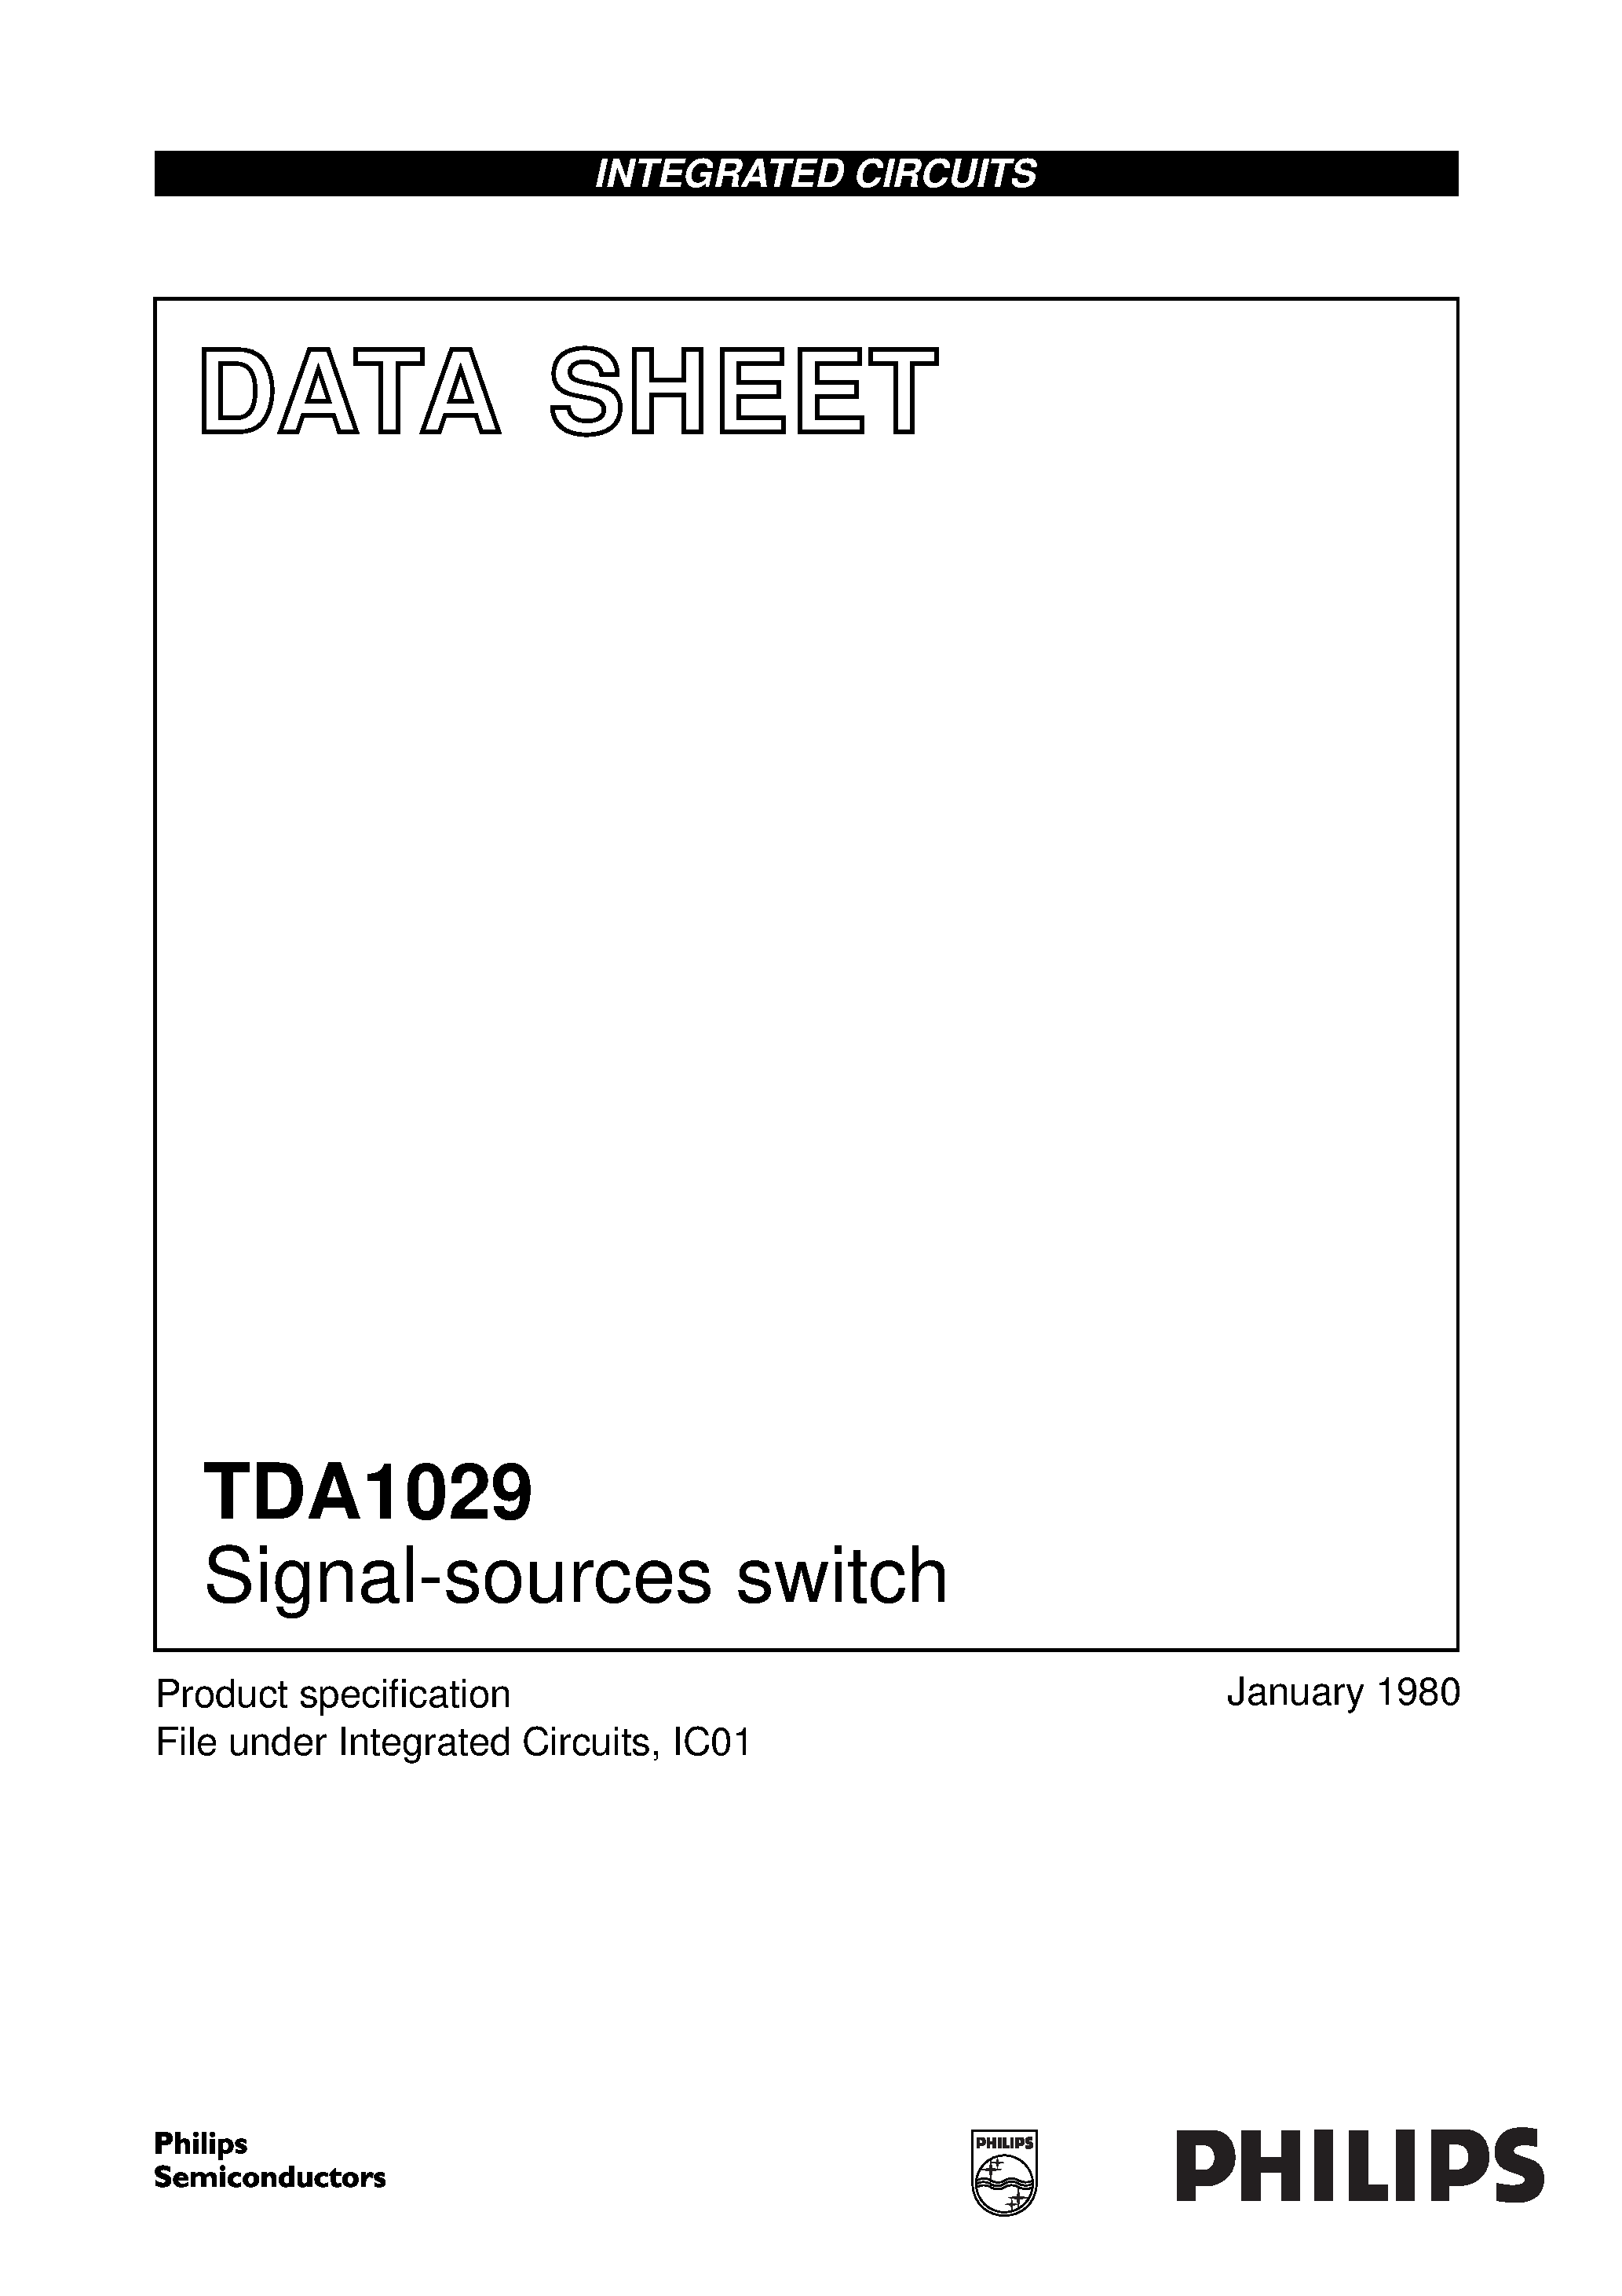 Даташит TDA1029 - Signal-sources switch страница 1